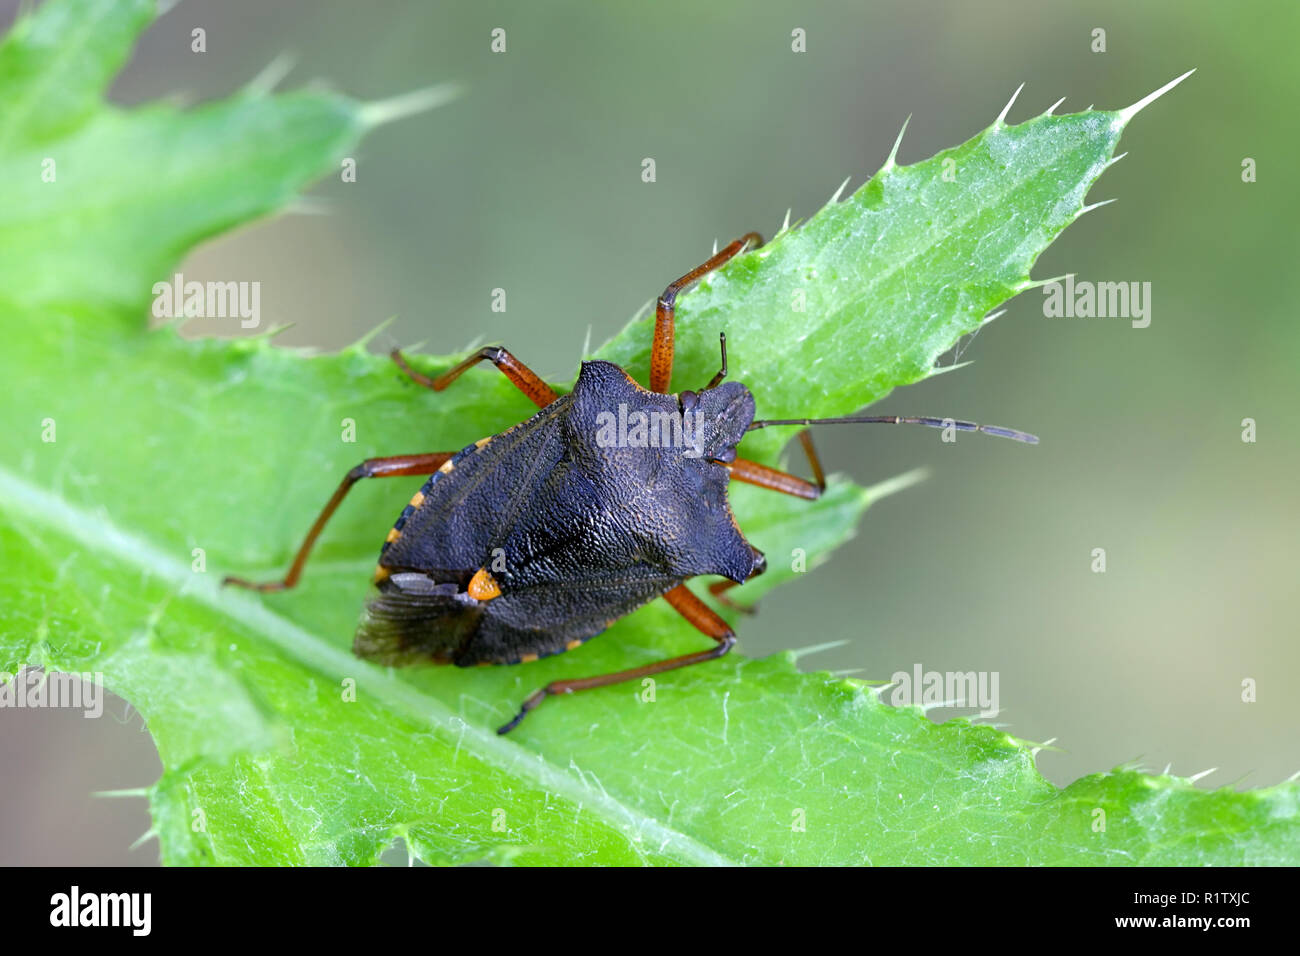 Forest bug or red-legged shieldbug, Pentatoma rufipes Stock Photo - Alamy